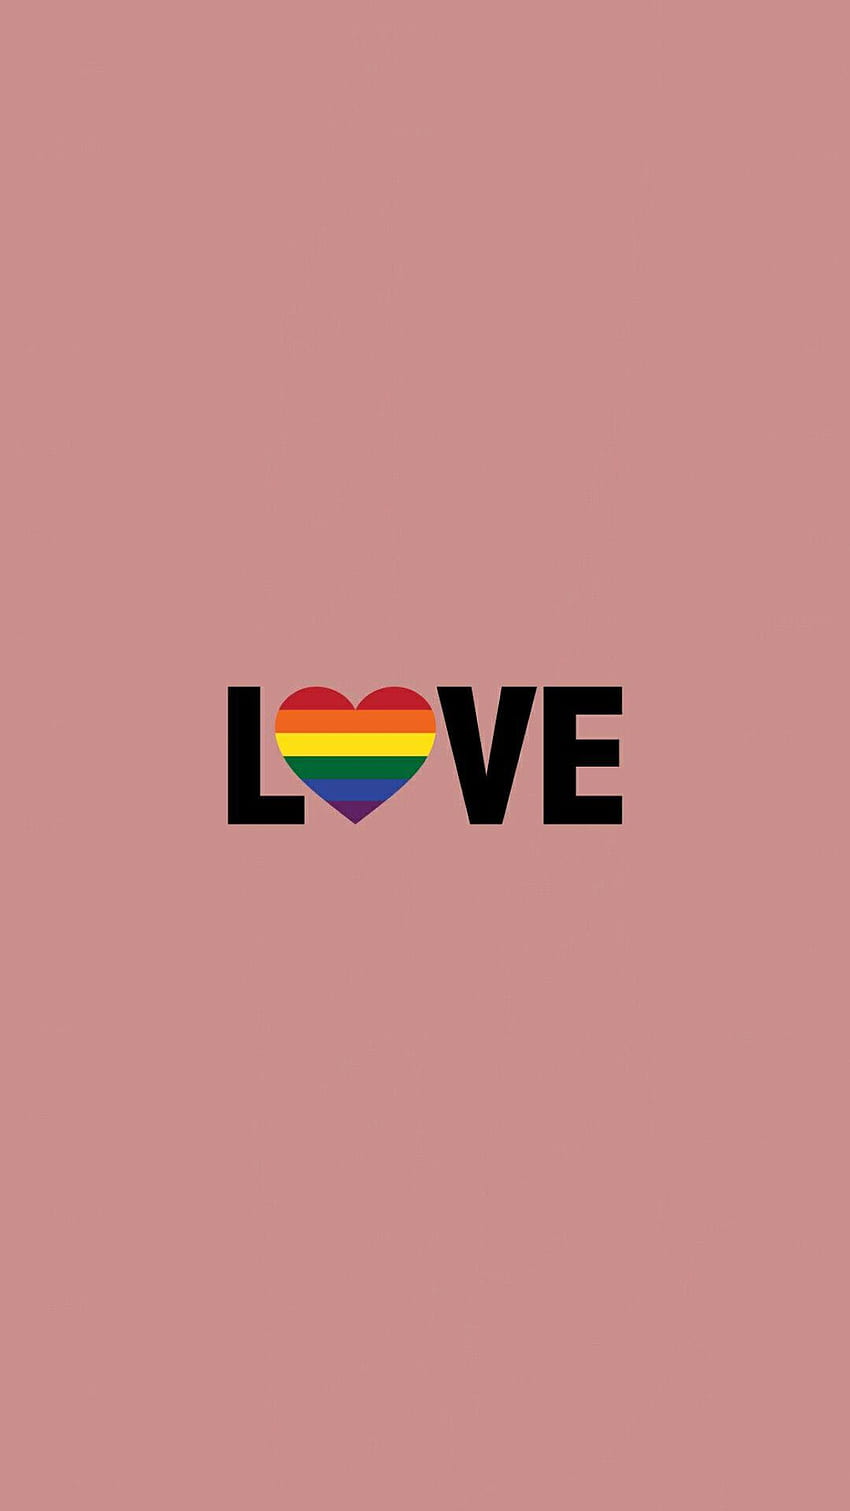 pride / lgbt / gay / lesbian / bi / trans / love is love is love, lesbian love HD phone wallpaper